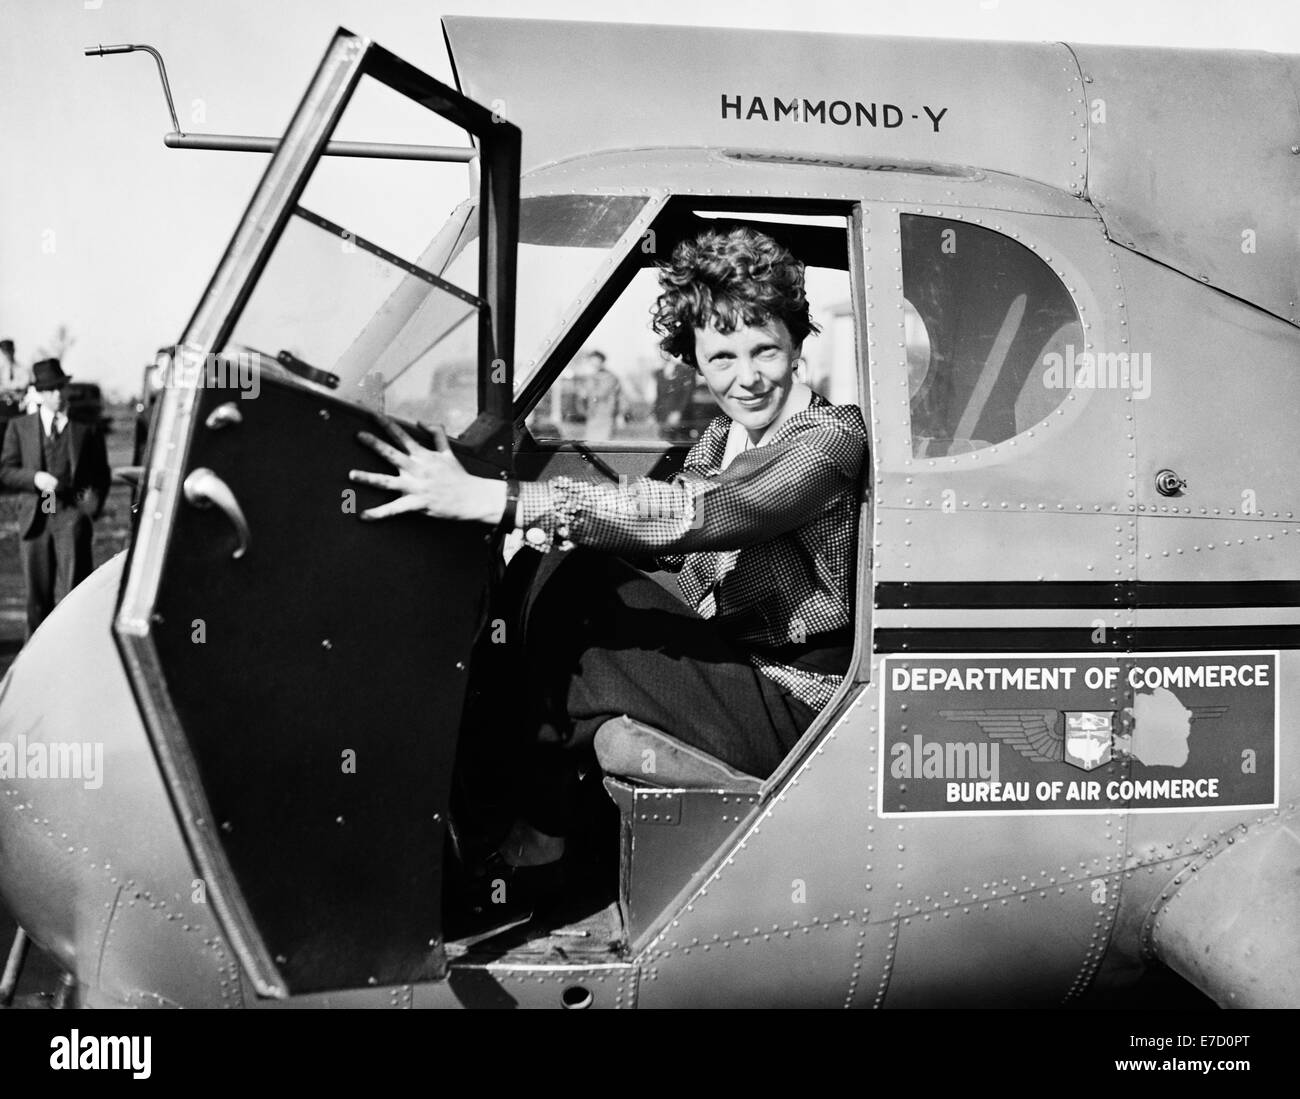 Foto d'epoca della pioniera e autrice dell'aviazione americana Amelia Earhart (1897 – dichiarata morta nel 1939) – Earthart e il suo navigatore Fred Noonan sono scomparsi nel 1937 mentre stava cercando di diventare la prima donna a completare un volo circumnavigazionale del globo. Earhart è raffigurato nel 1936 seduto nel pozzetto di un aereo del Dipartimento del Commercio degli Stati Uniti. Foto Stock